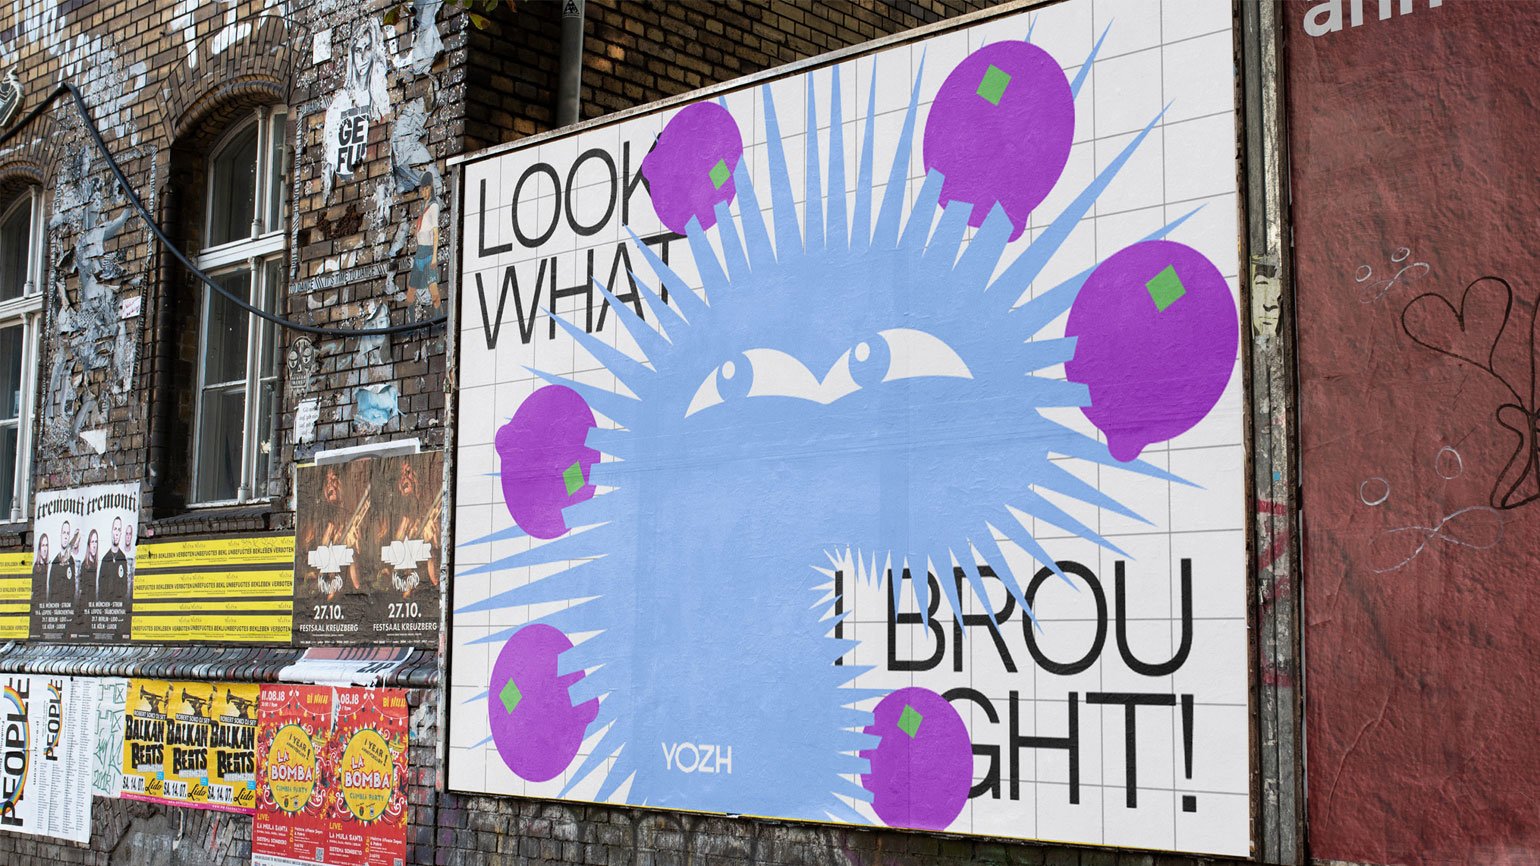 мокап билборда с айдентикой натуральных овощных чипсов с голубым, фиолетовым, зелёным цветами и чёрным гротеском